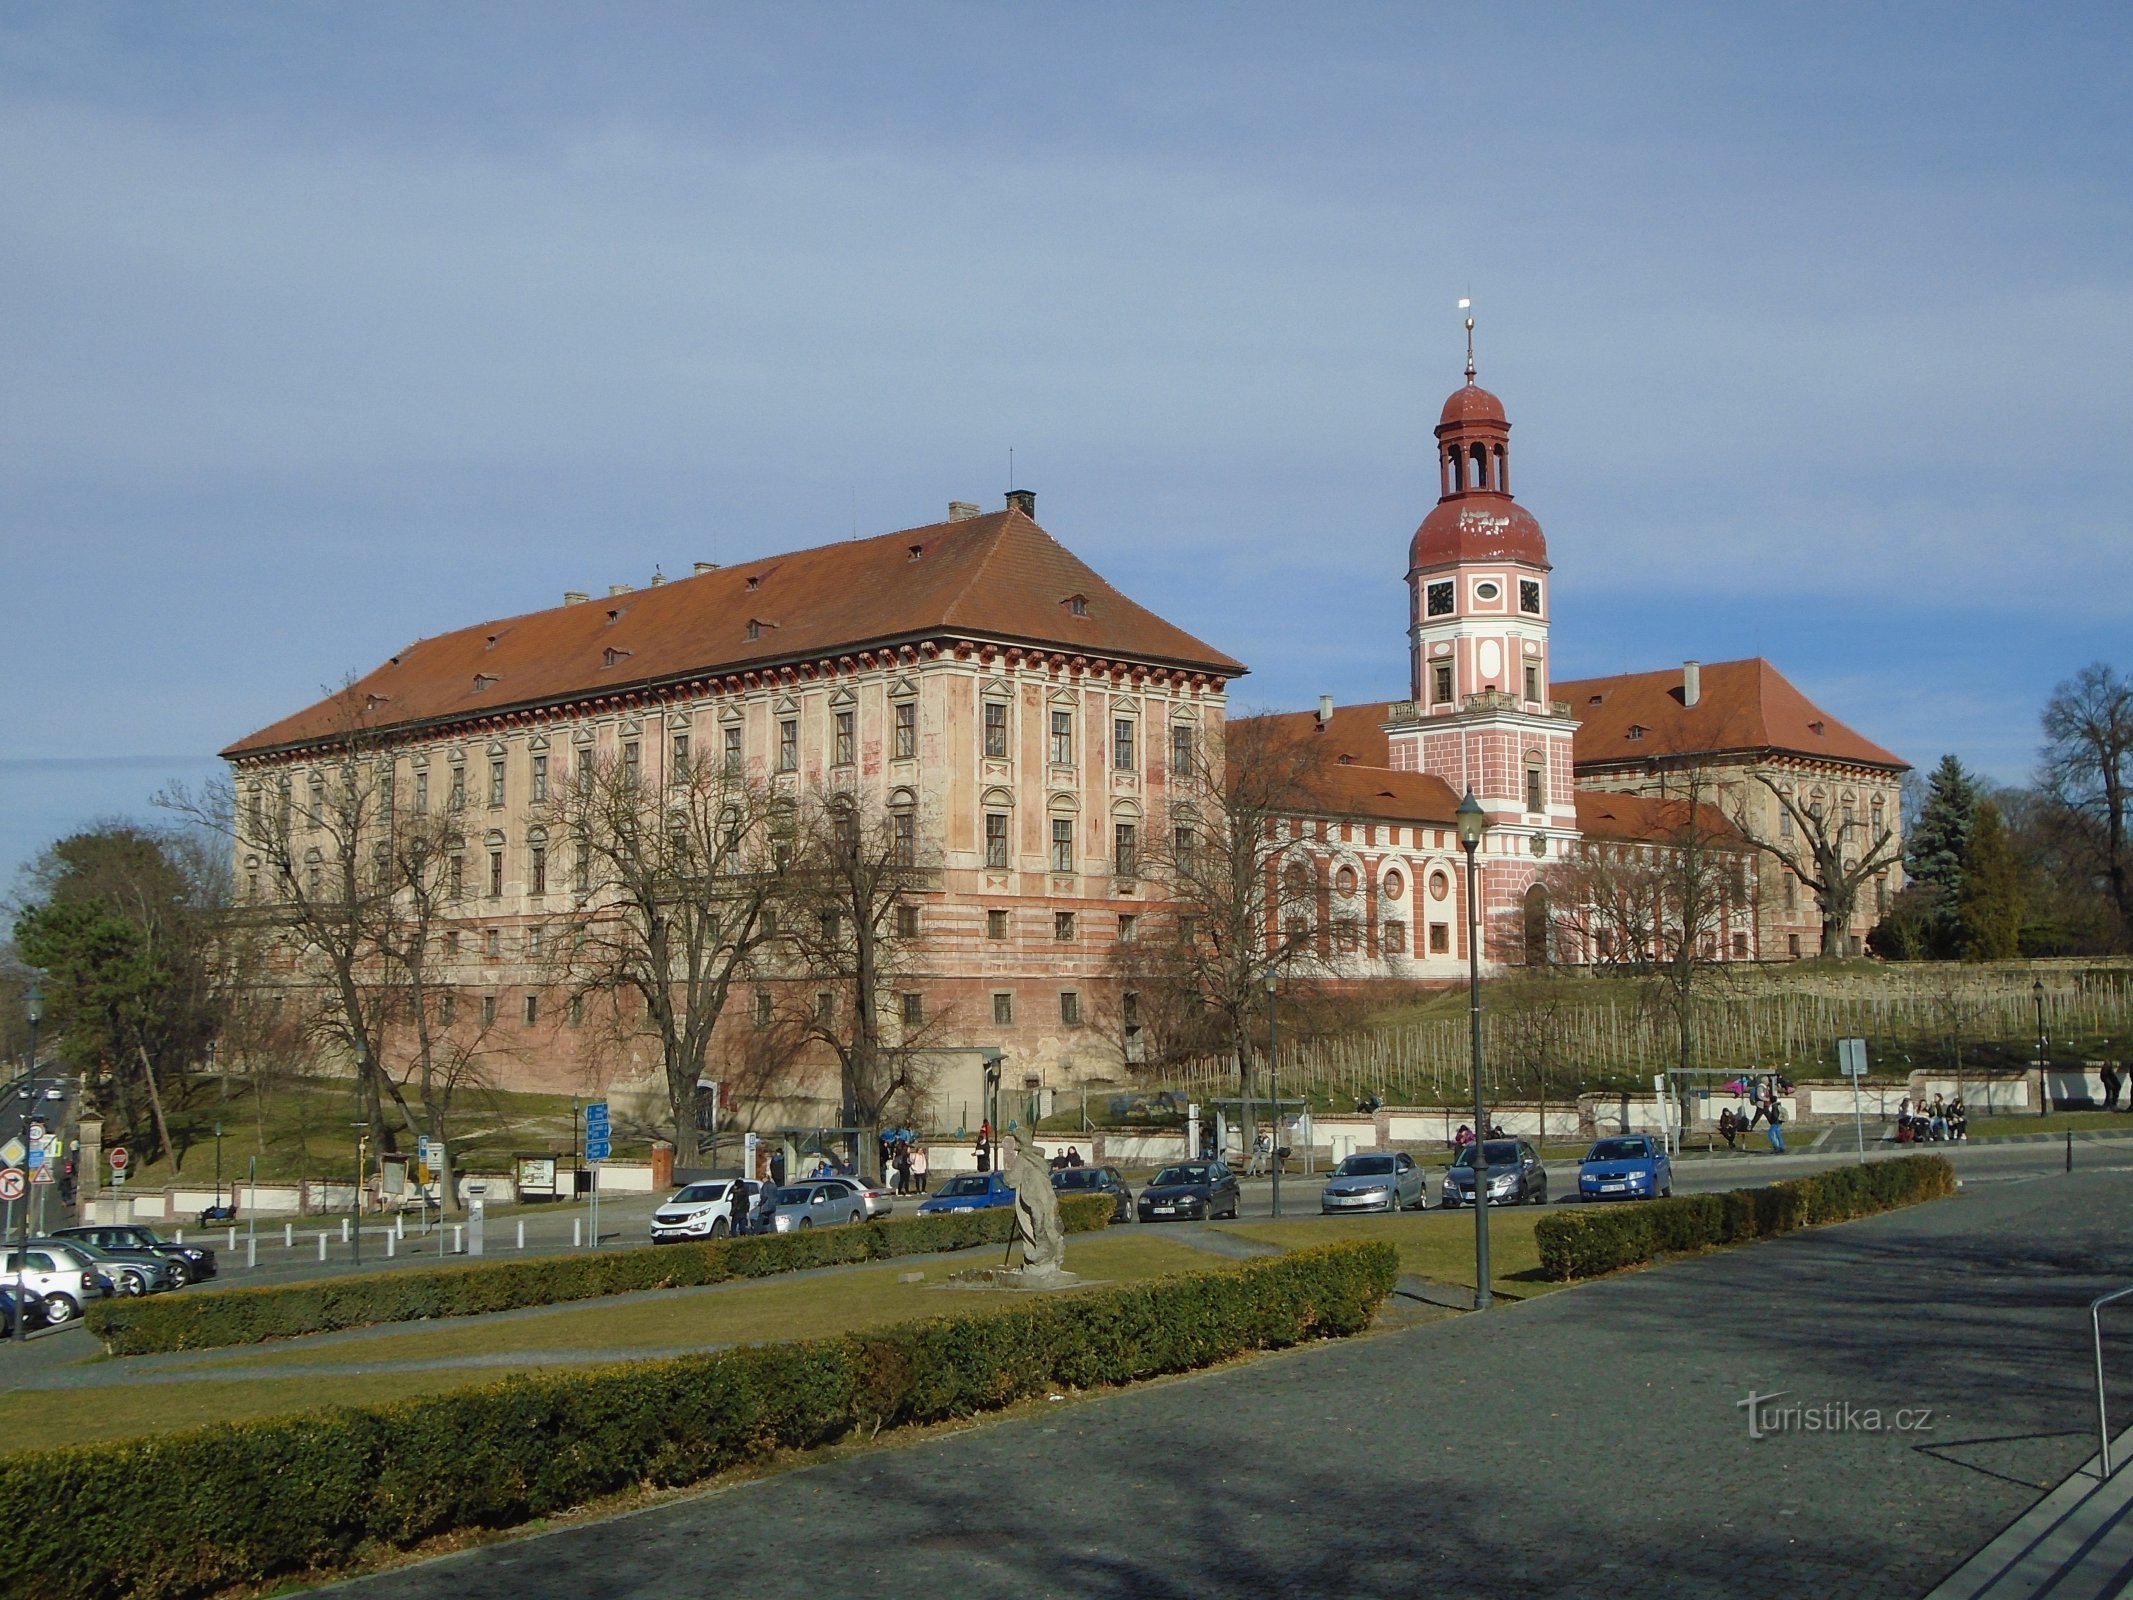 Grad Lobkowicz (Roudnice nad Labem, 6.3.2019. marec XNUMX)